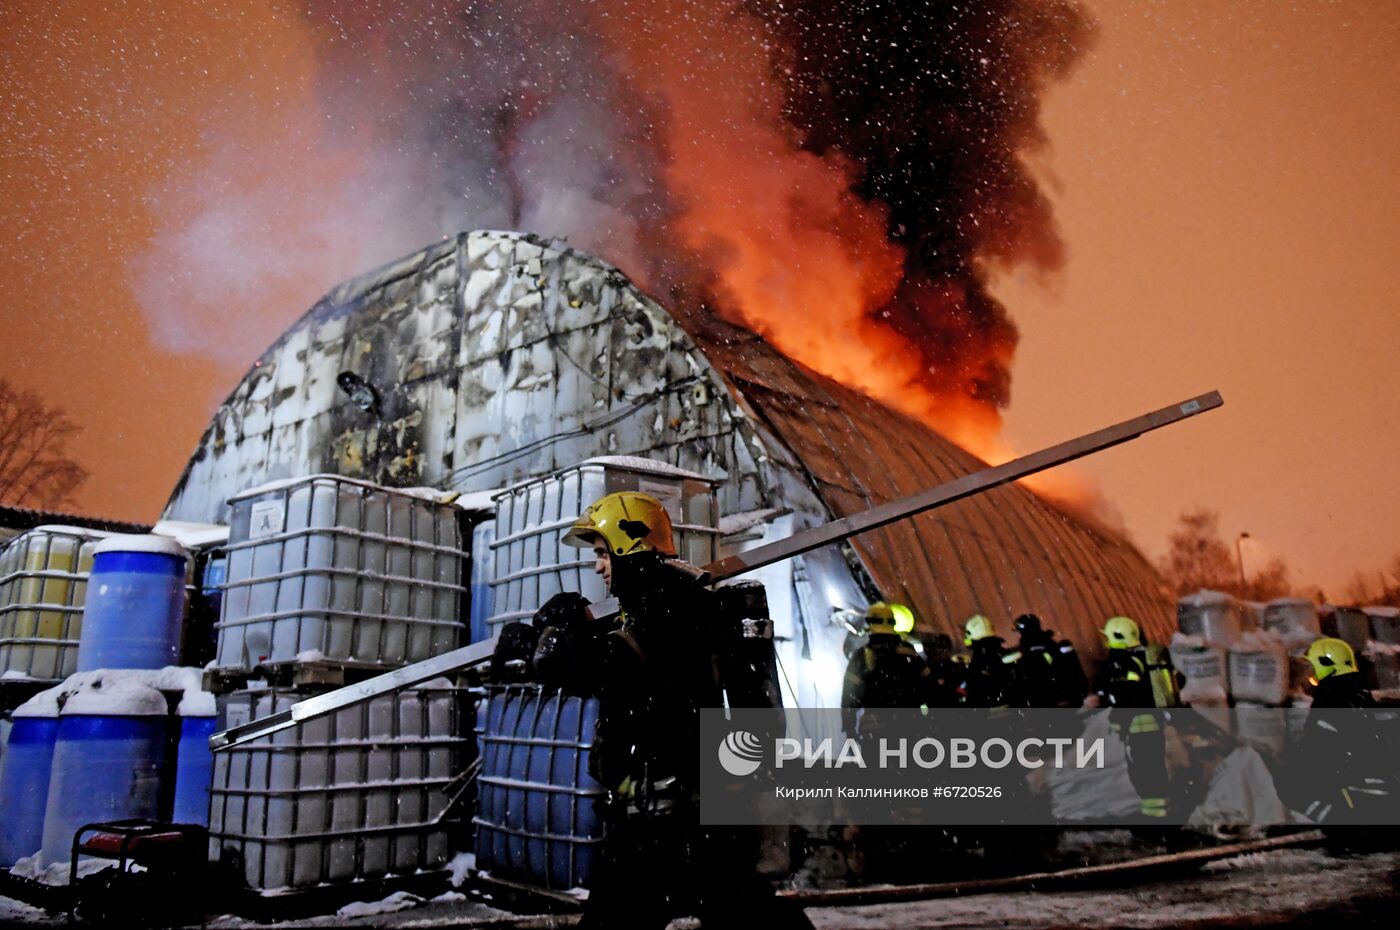 Пожар на территории Парка Горького в Москве